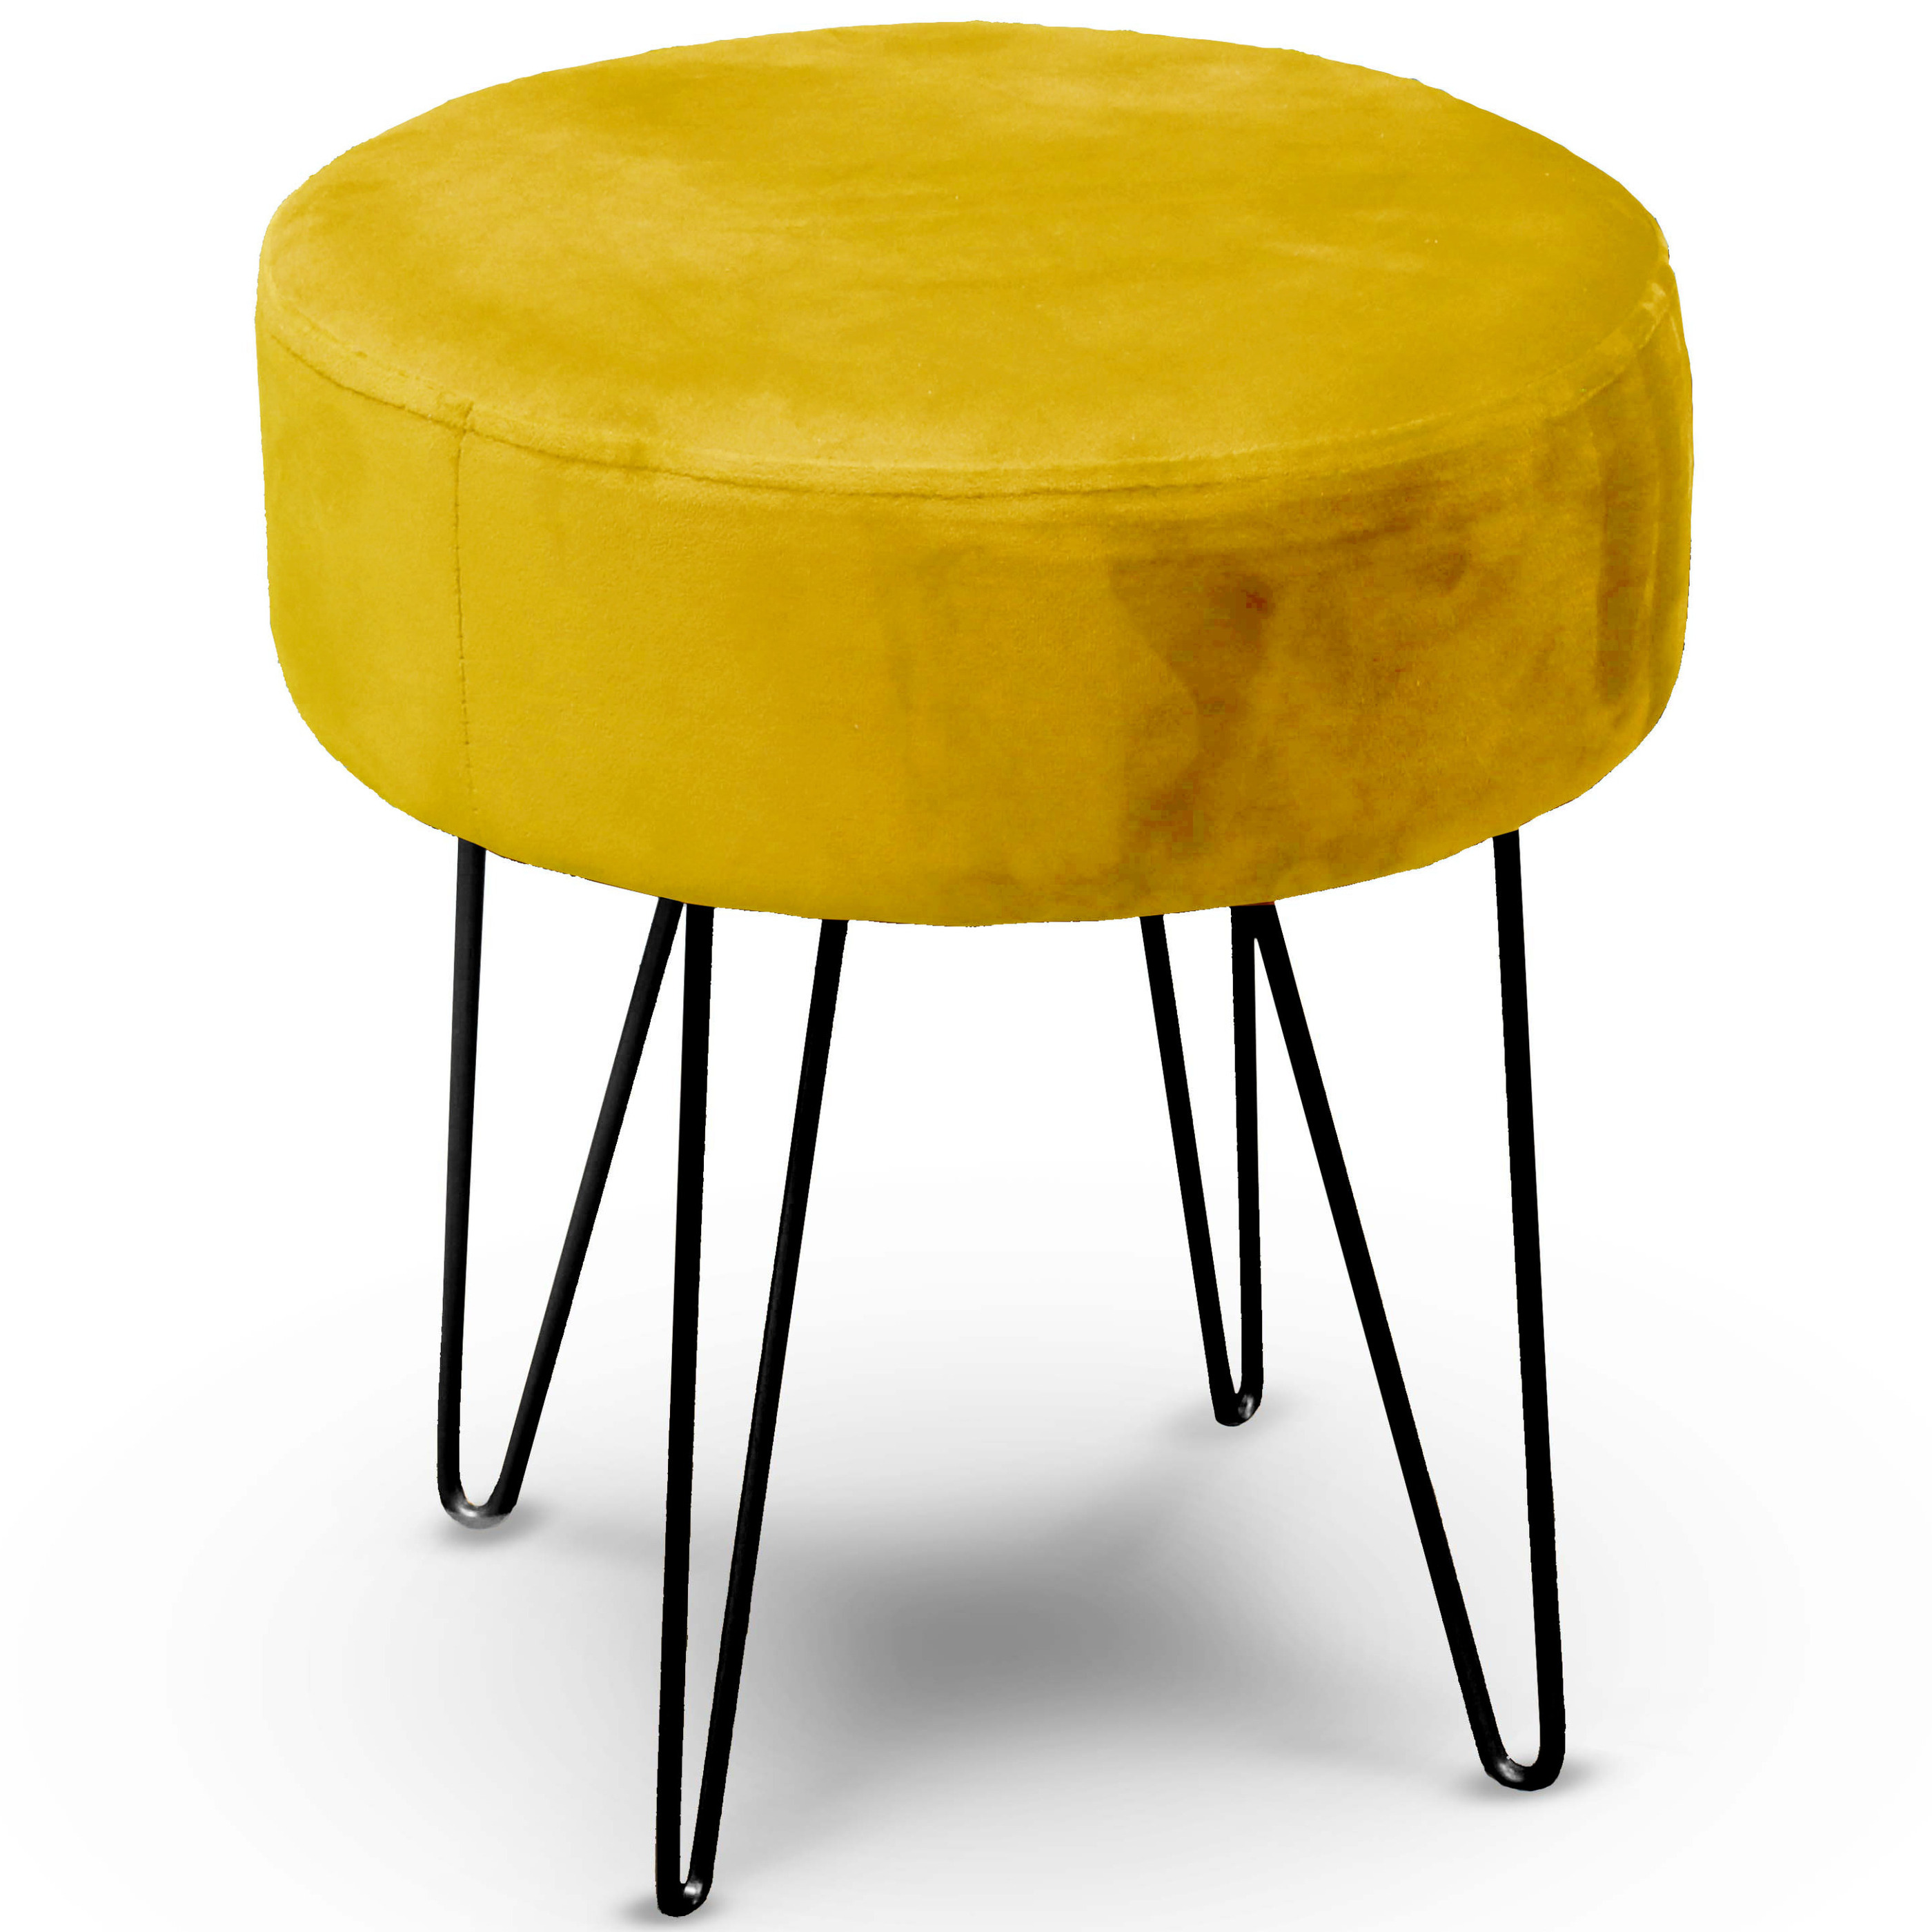 Unique Living - velvet kruk Davy - oker geel - metaal/stof - 35 x 40 cm